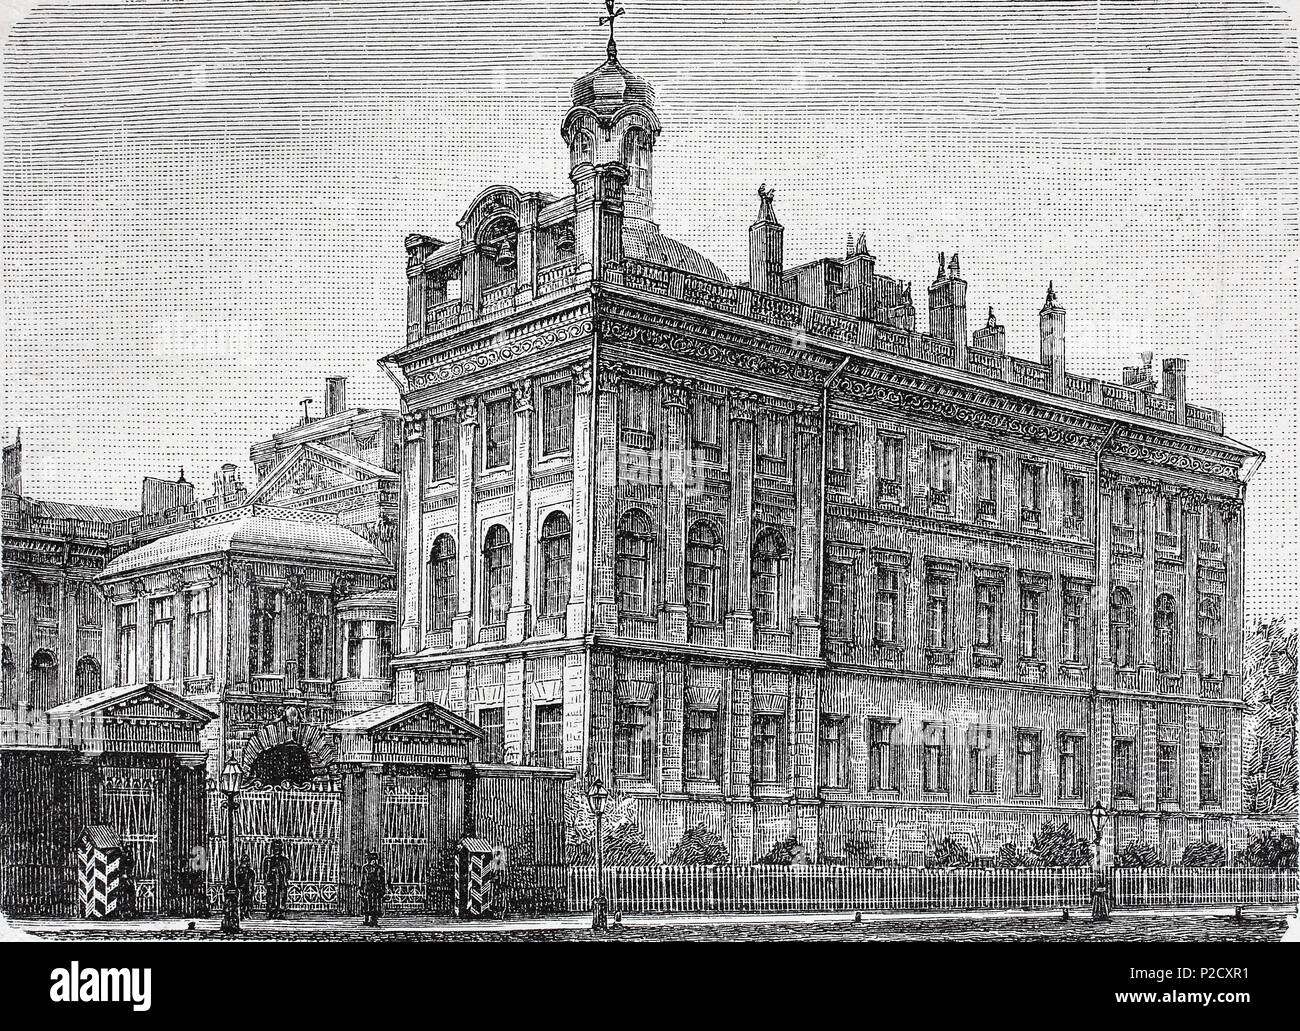 Palais Anichkov était un ancien palais impérial à Saint-Pétersbourg, Russie, Anitschkowpalast zu Saint-Pétersbourg, Russie, amélioration numérique reproduction à partir d'un tirage original du 19ème siècle, 1881 Banque D'Images